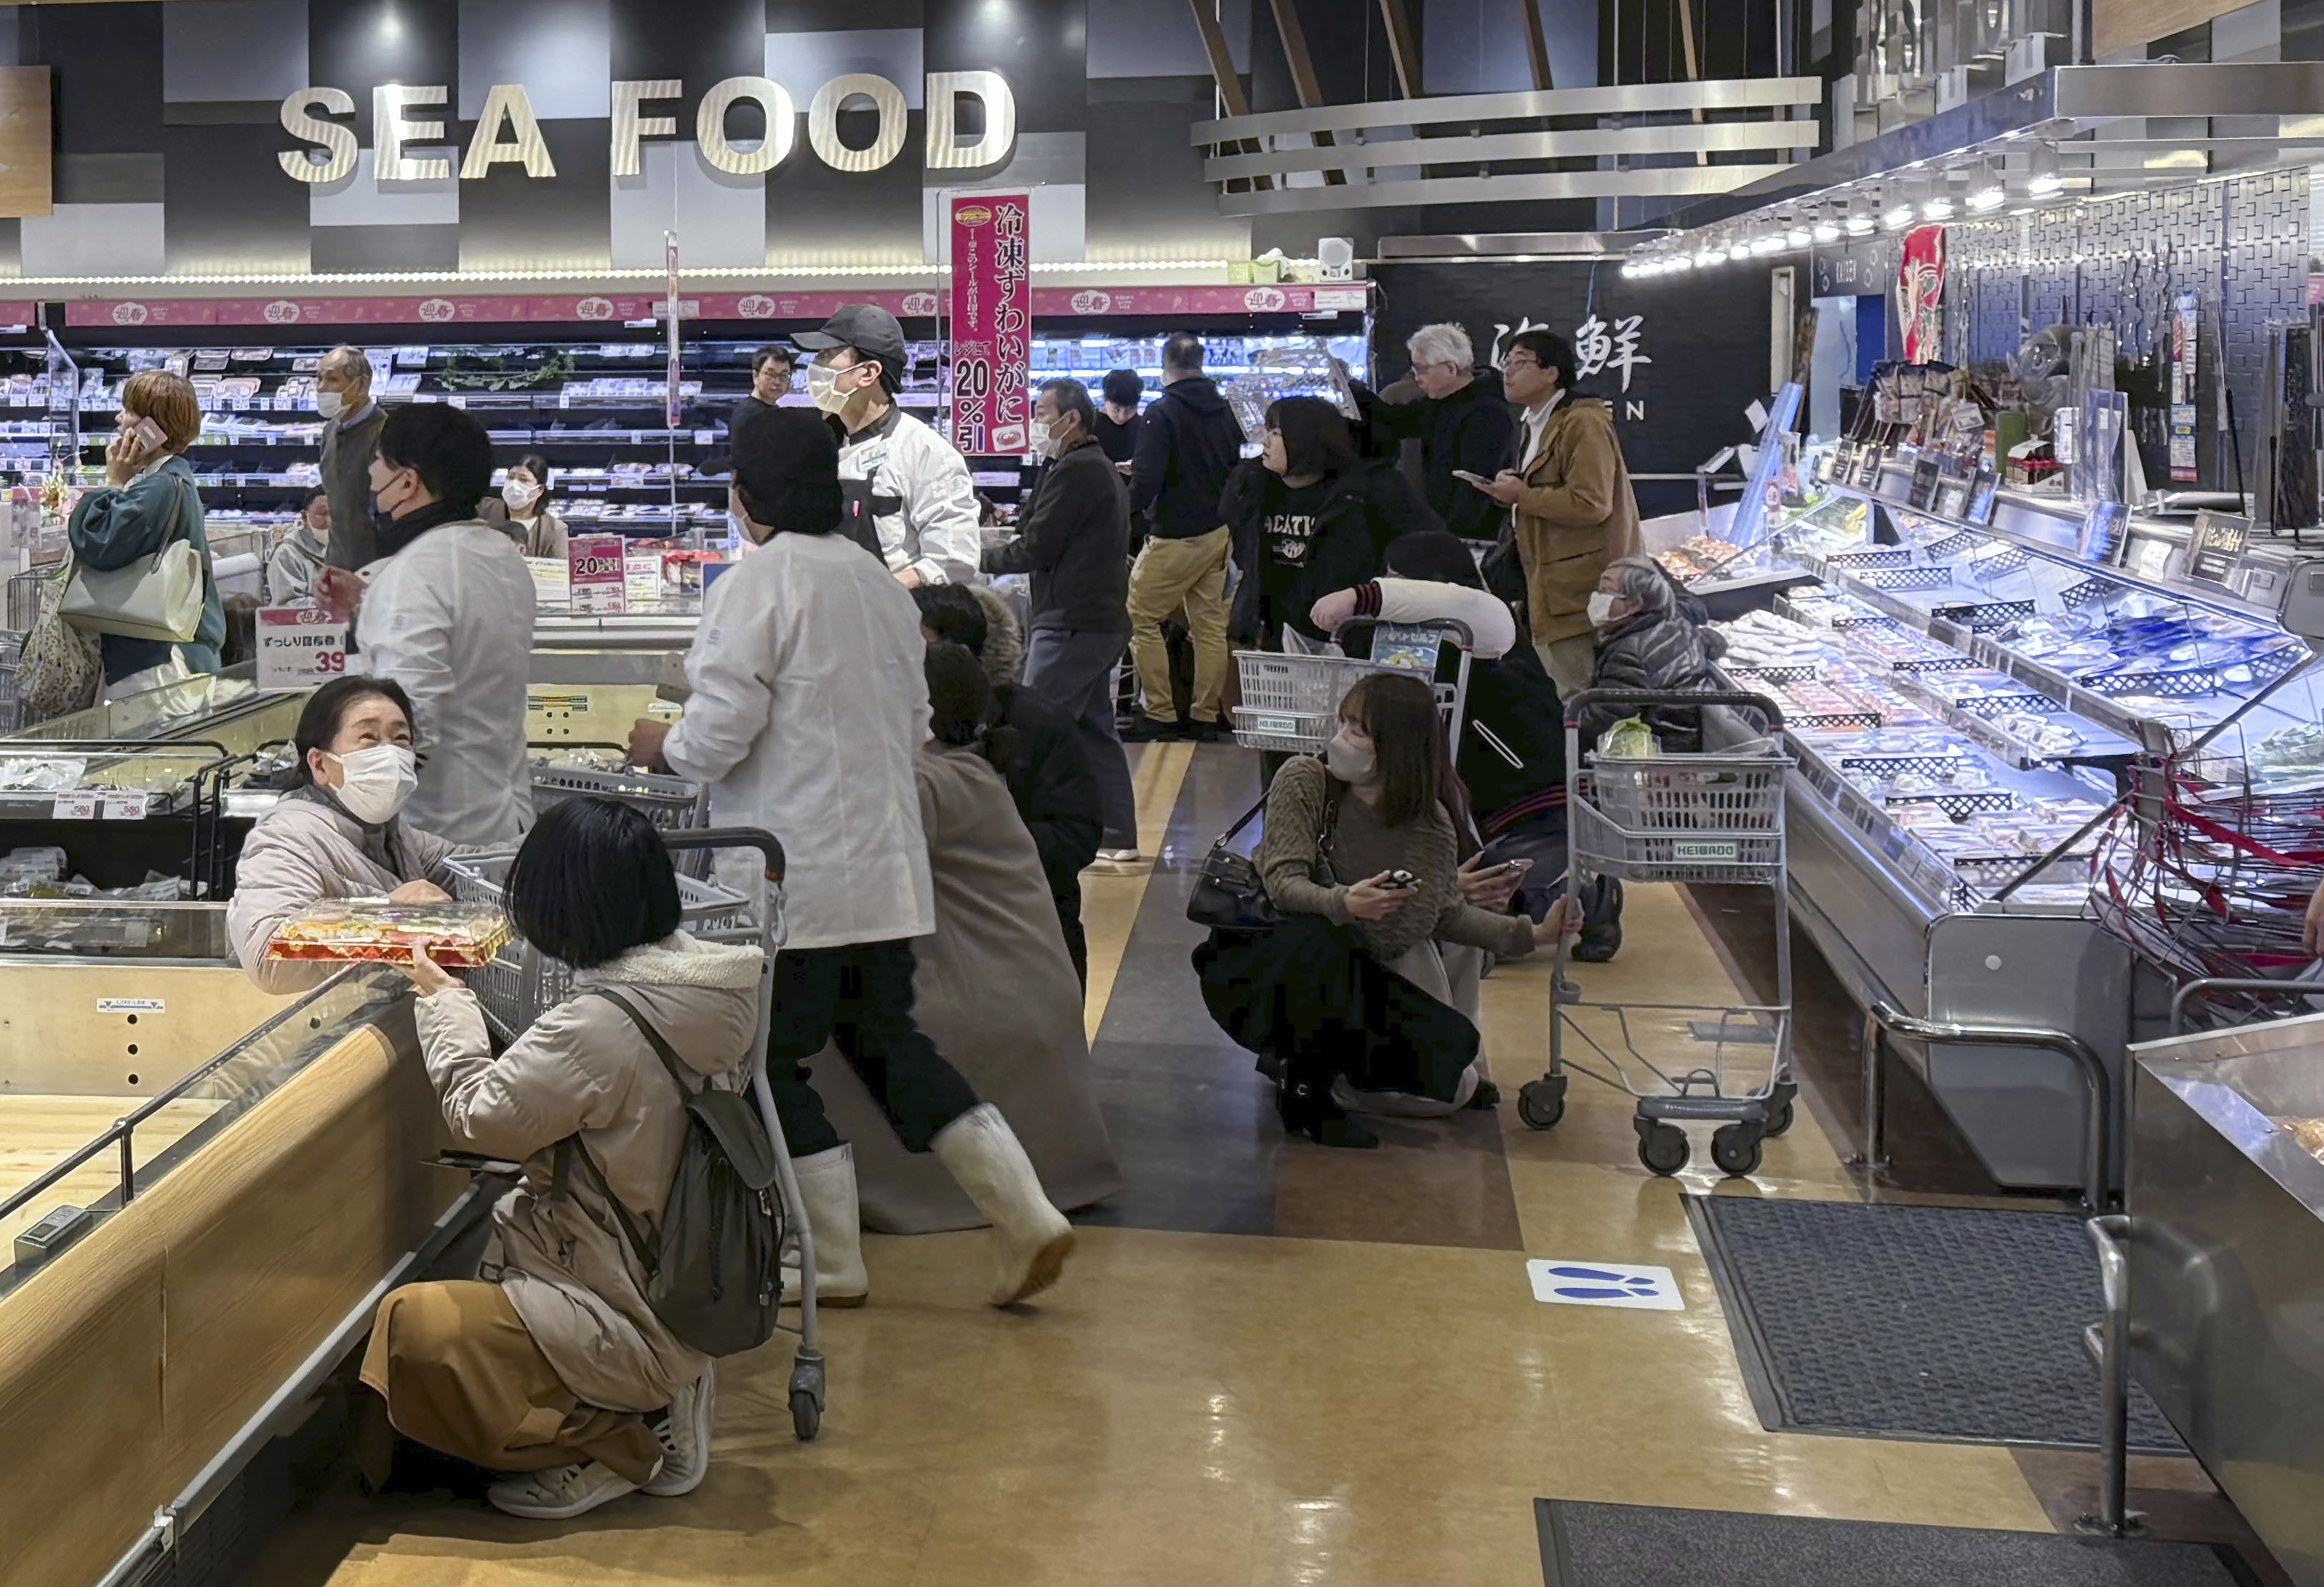 پیر کو آنے والے زلزلے کے جھٹکوں سے سوپر مارکیٹ میں سہمے ہوئے لوگ  (PHOTO:AP)